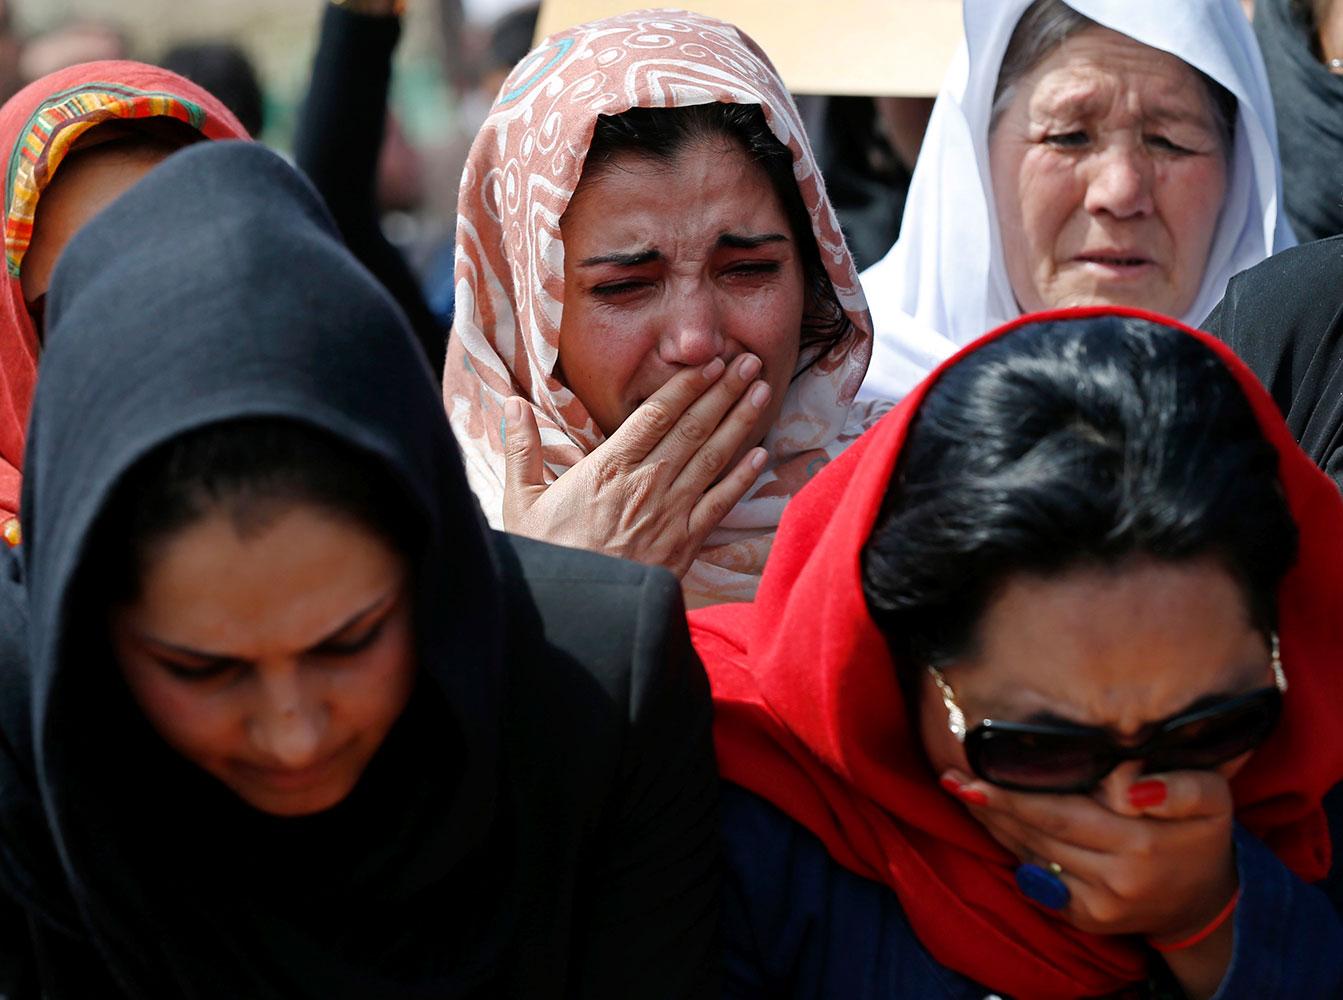 Afghanska feminister och aktivister hade tagit sig till begravningen för att protestera mot våldet som riktar sig mot kvinnor och hedra Farkhunda.